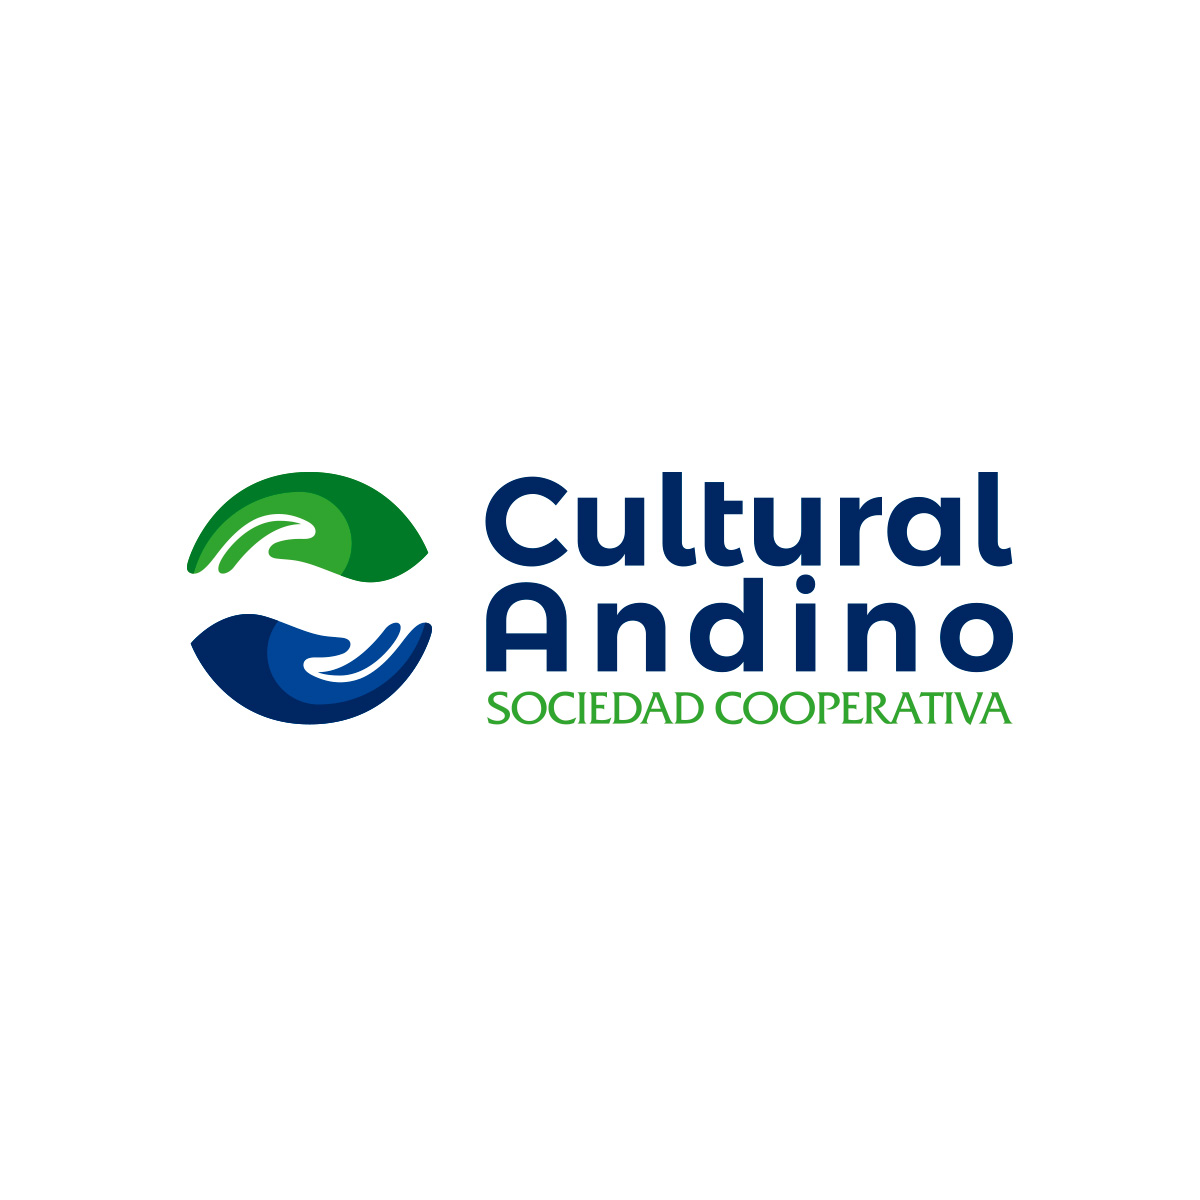 Cultural Andino Sociedad Cooperativa